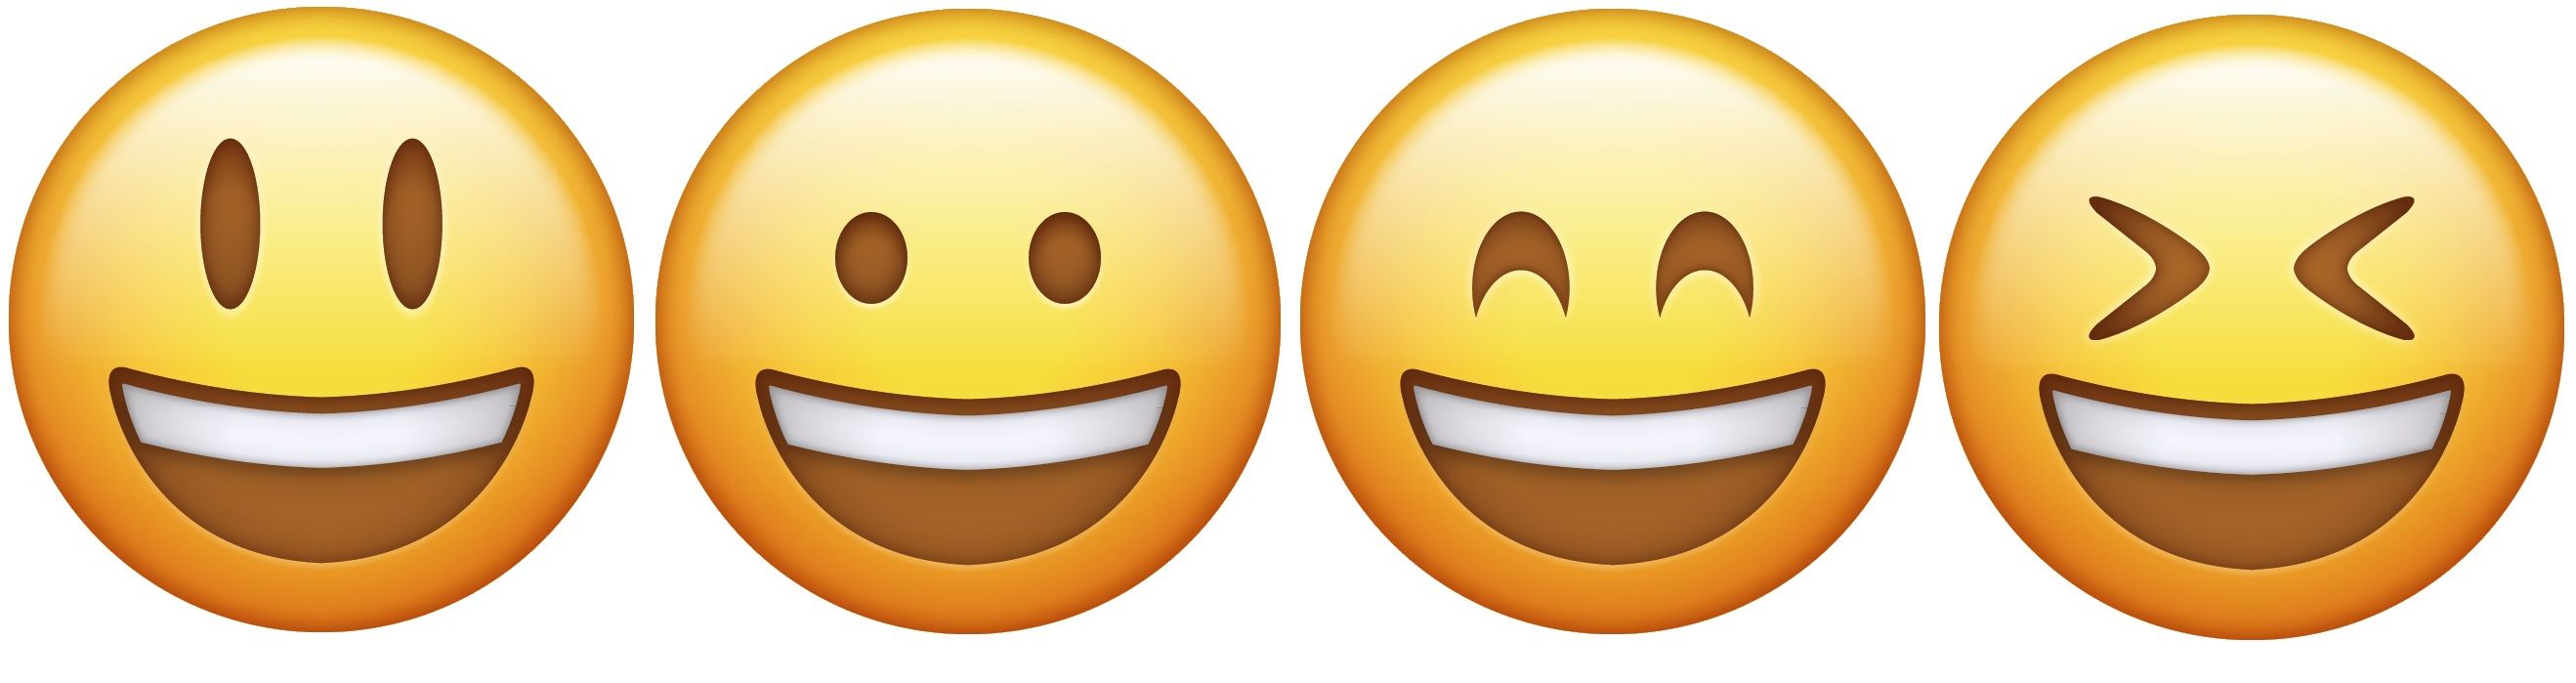 laugh happy emojis